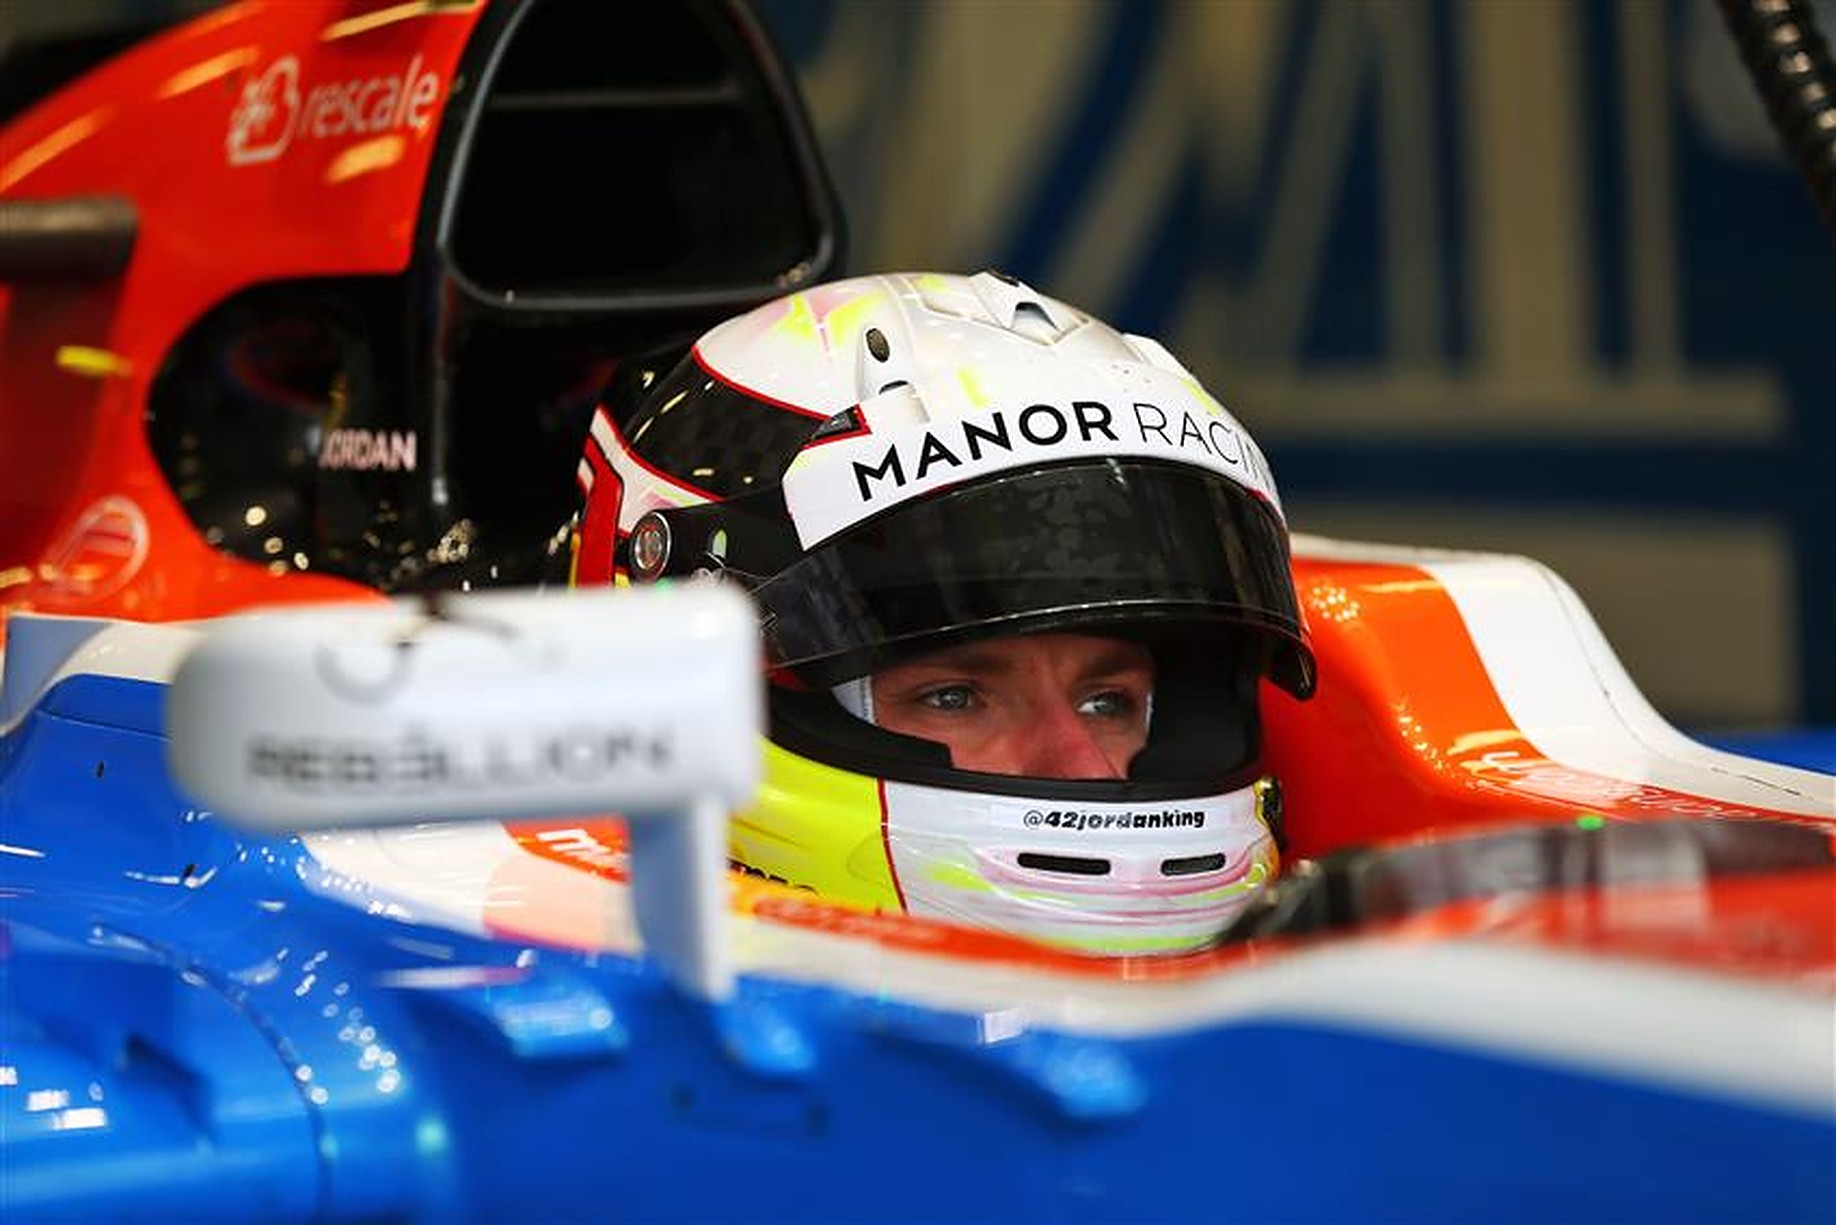 Jordan King at Manor Racing F1 Team - Formula1News.co.uk